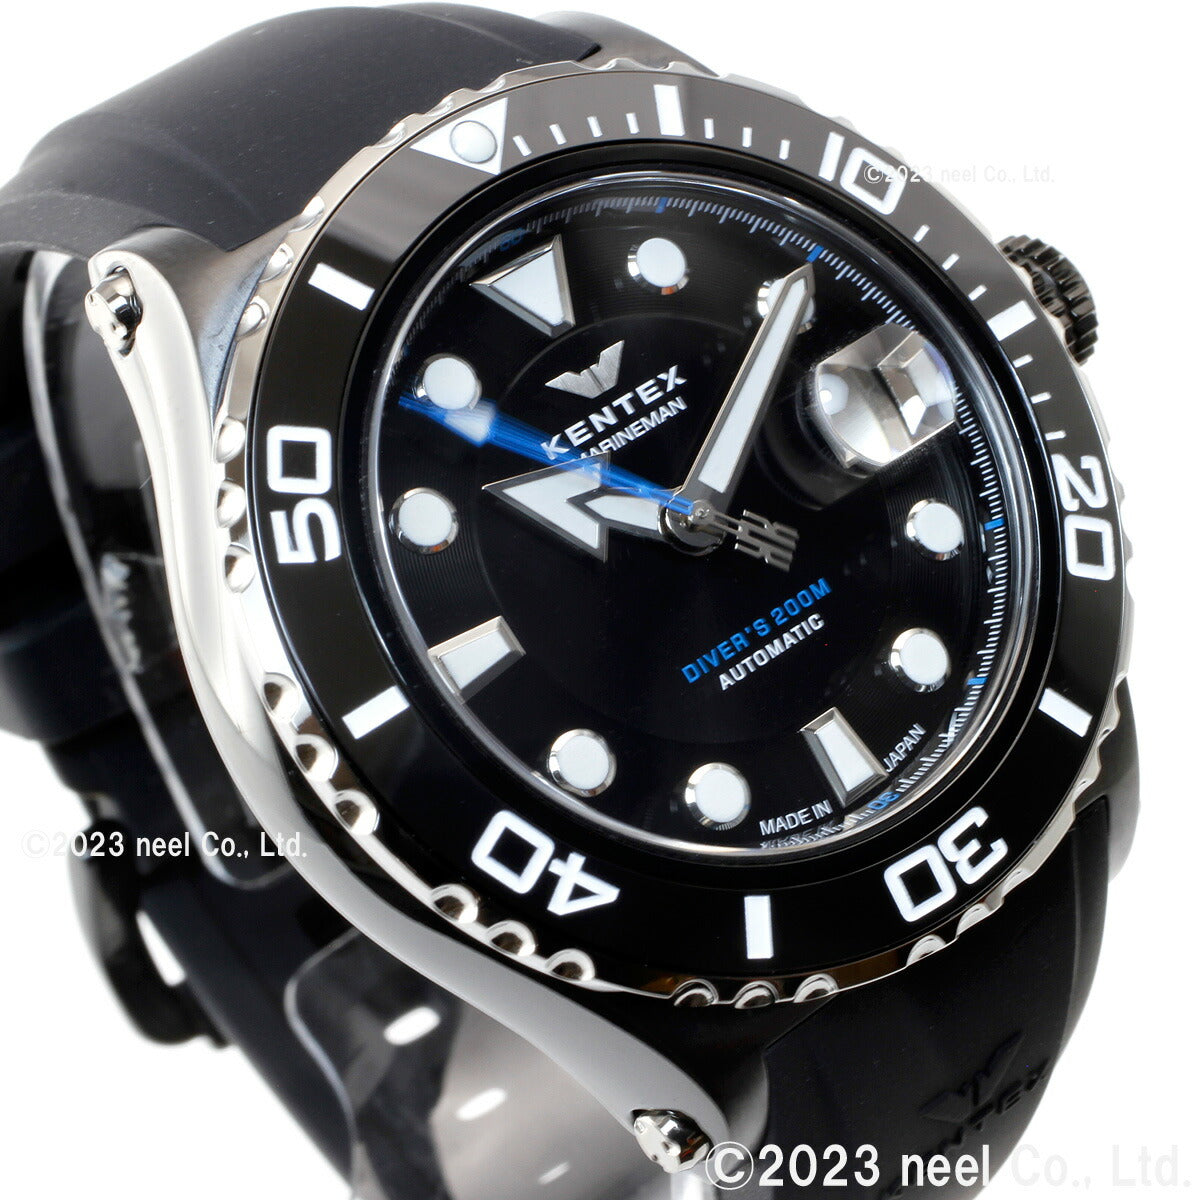 【5月から値上げ！】ケンテックス KENTEX 腕時計 時計 メンズ ダイバーズ 自動巻き マリンマン シーホースII 日本製 S706M-23